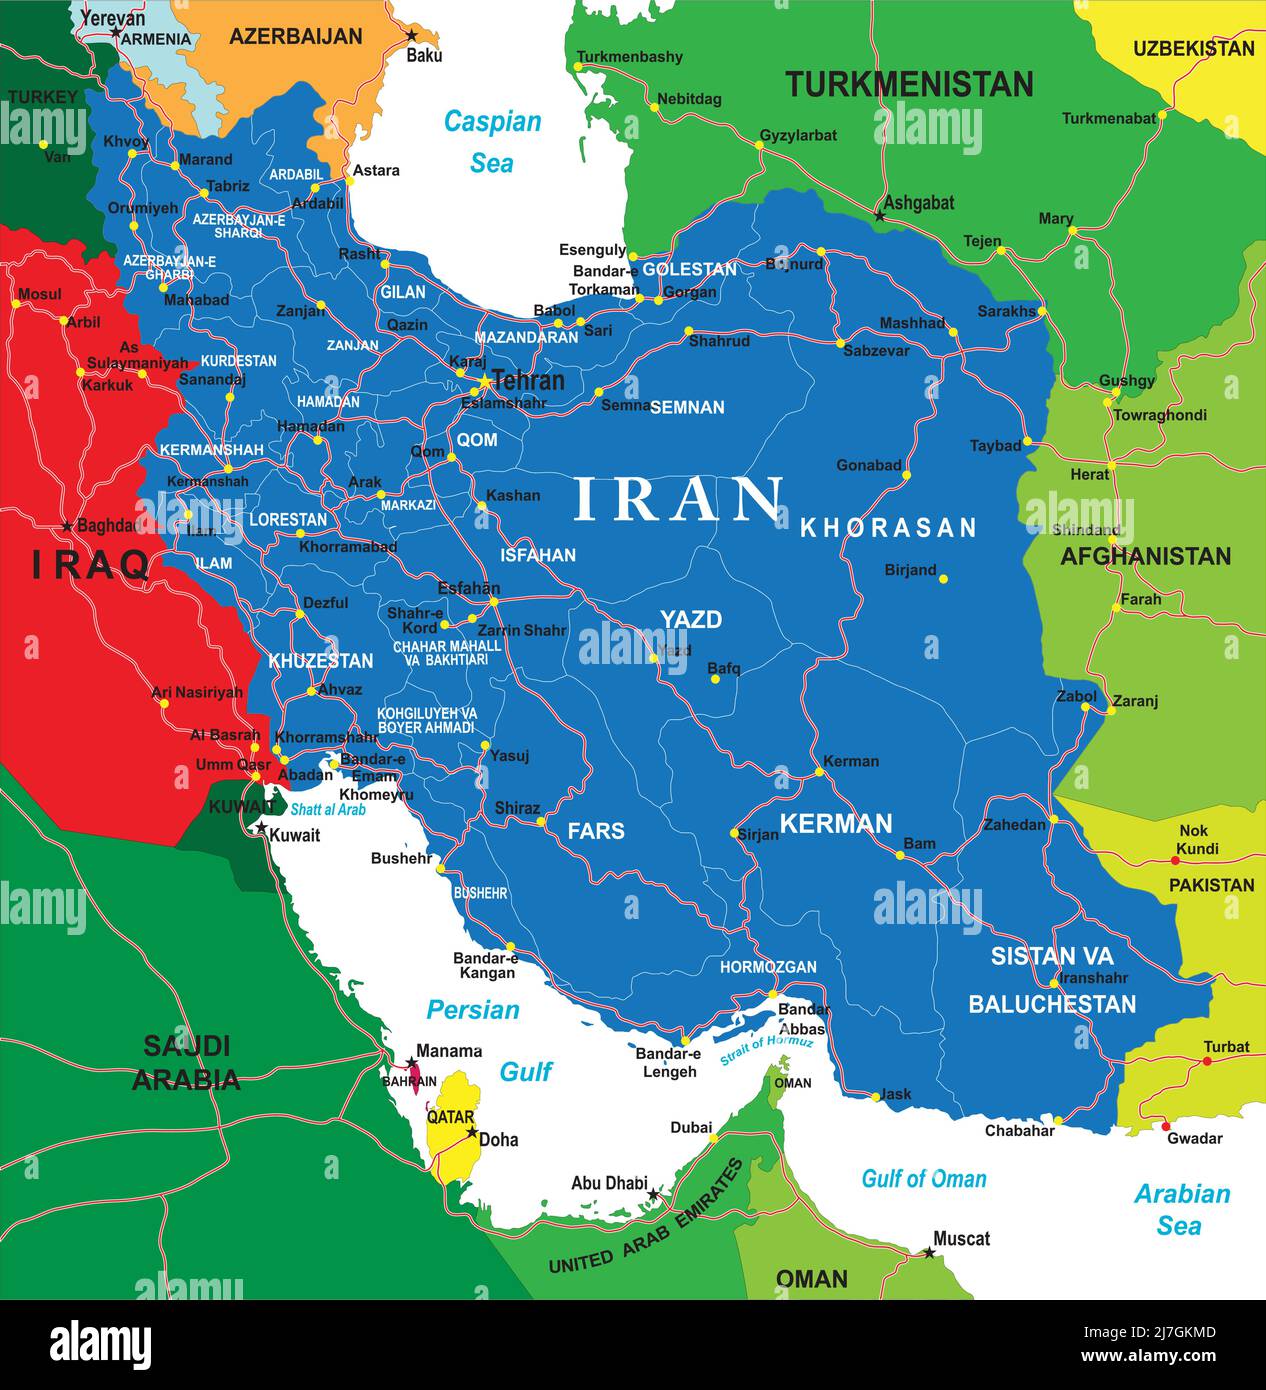 Hochdetaillierte Vektorkarte des Iran mit Verwaltungsregionen, Hauptstädten und Straßen. Stock Vektor